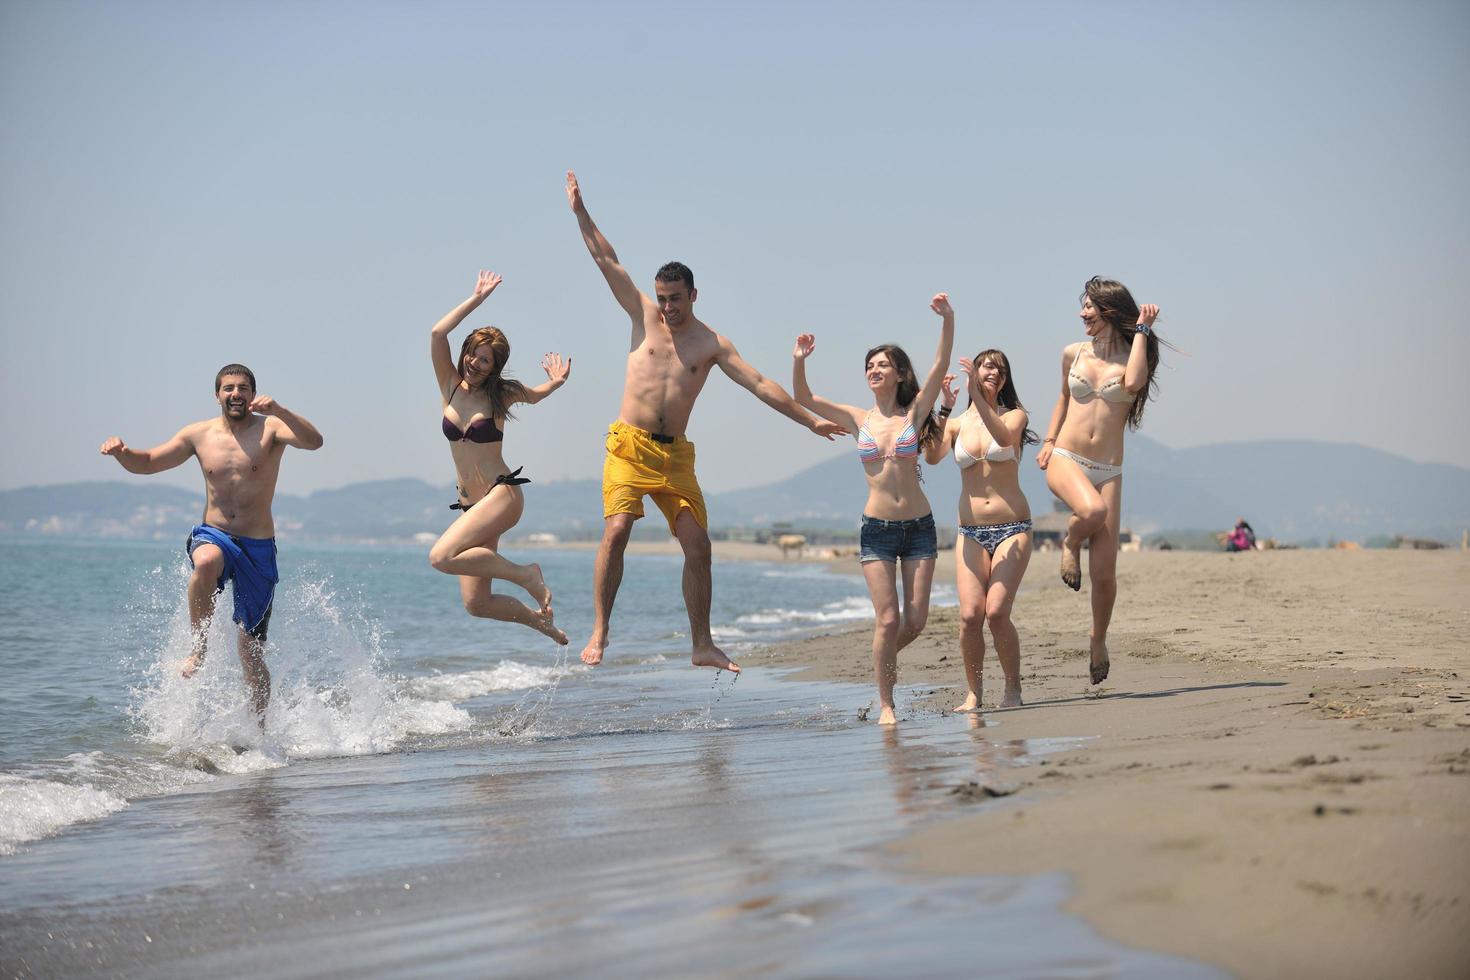 grupo de gente feliz divertirse y correr en la playa foto